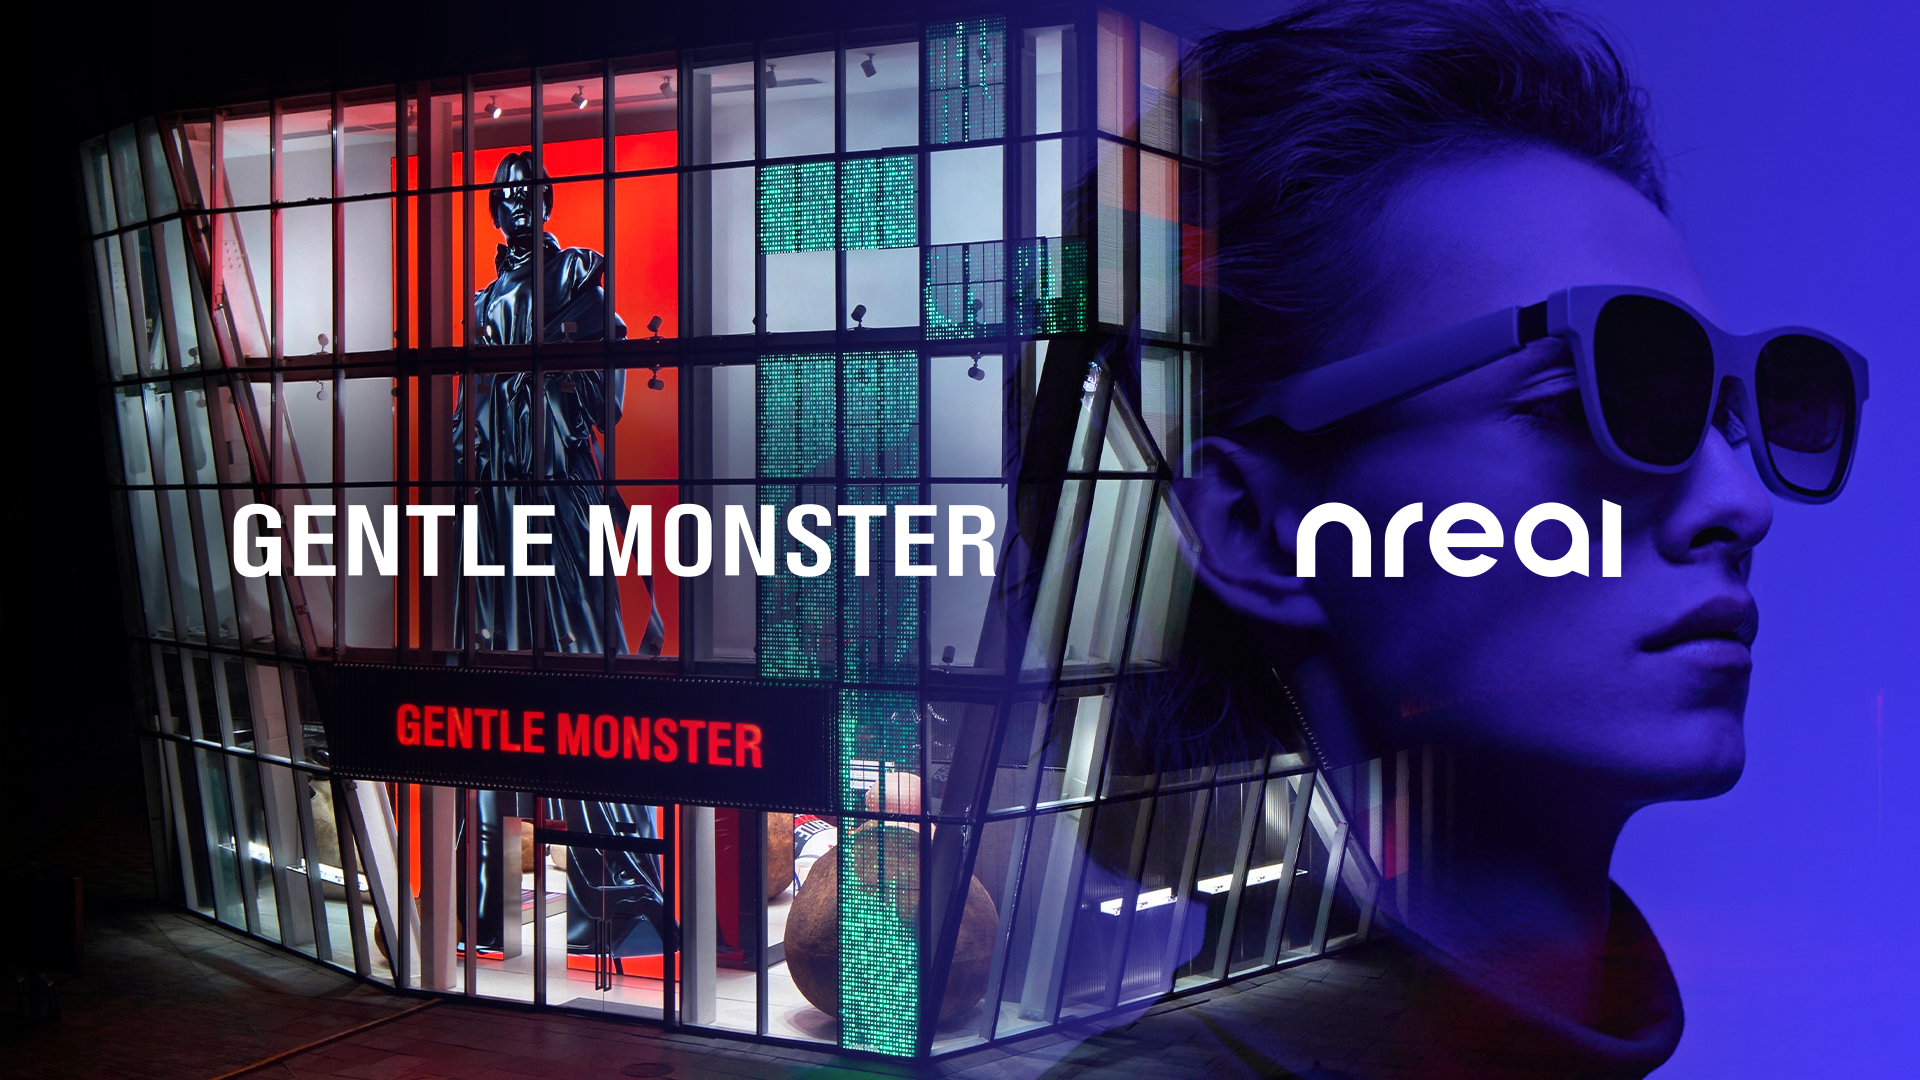 Nreal、Gentle Monsterの親会社であるIICOMBINED社からの出資を発表